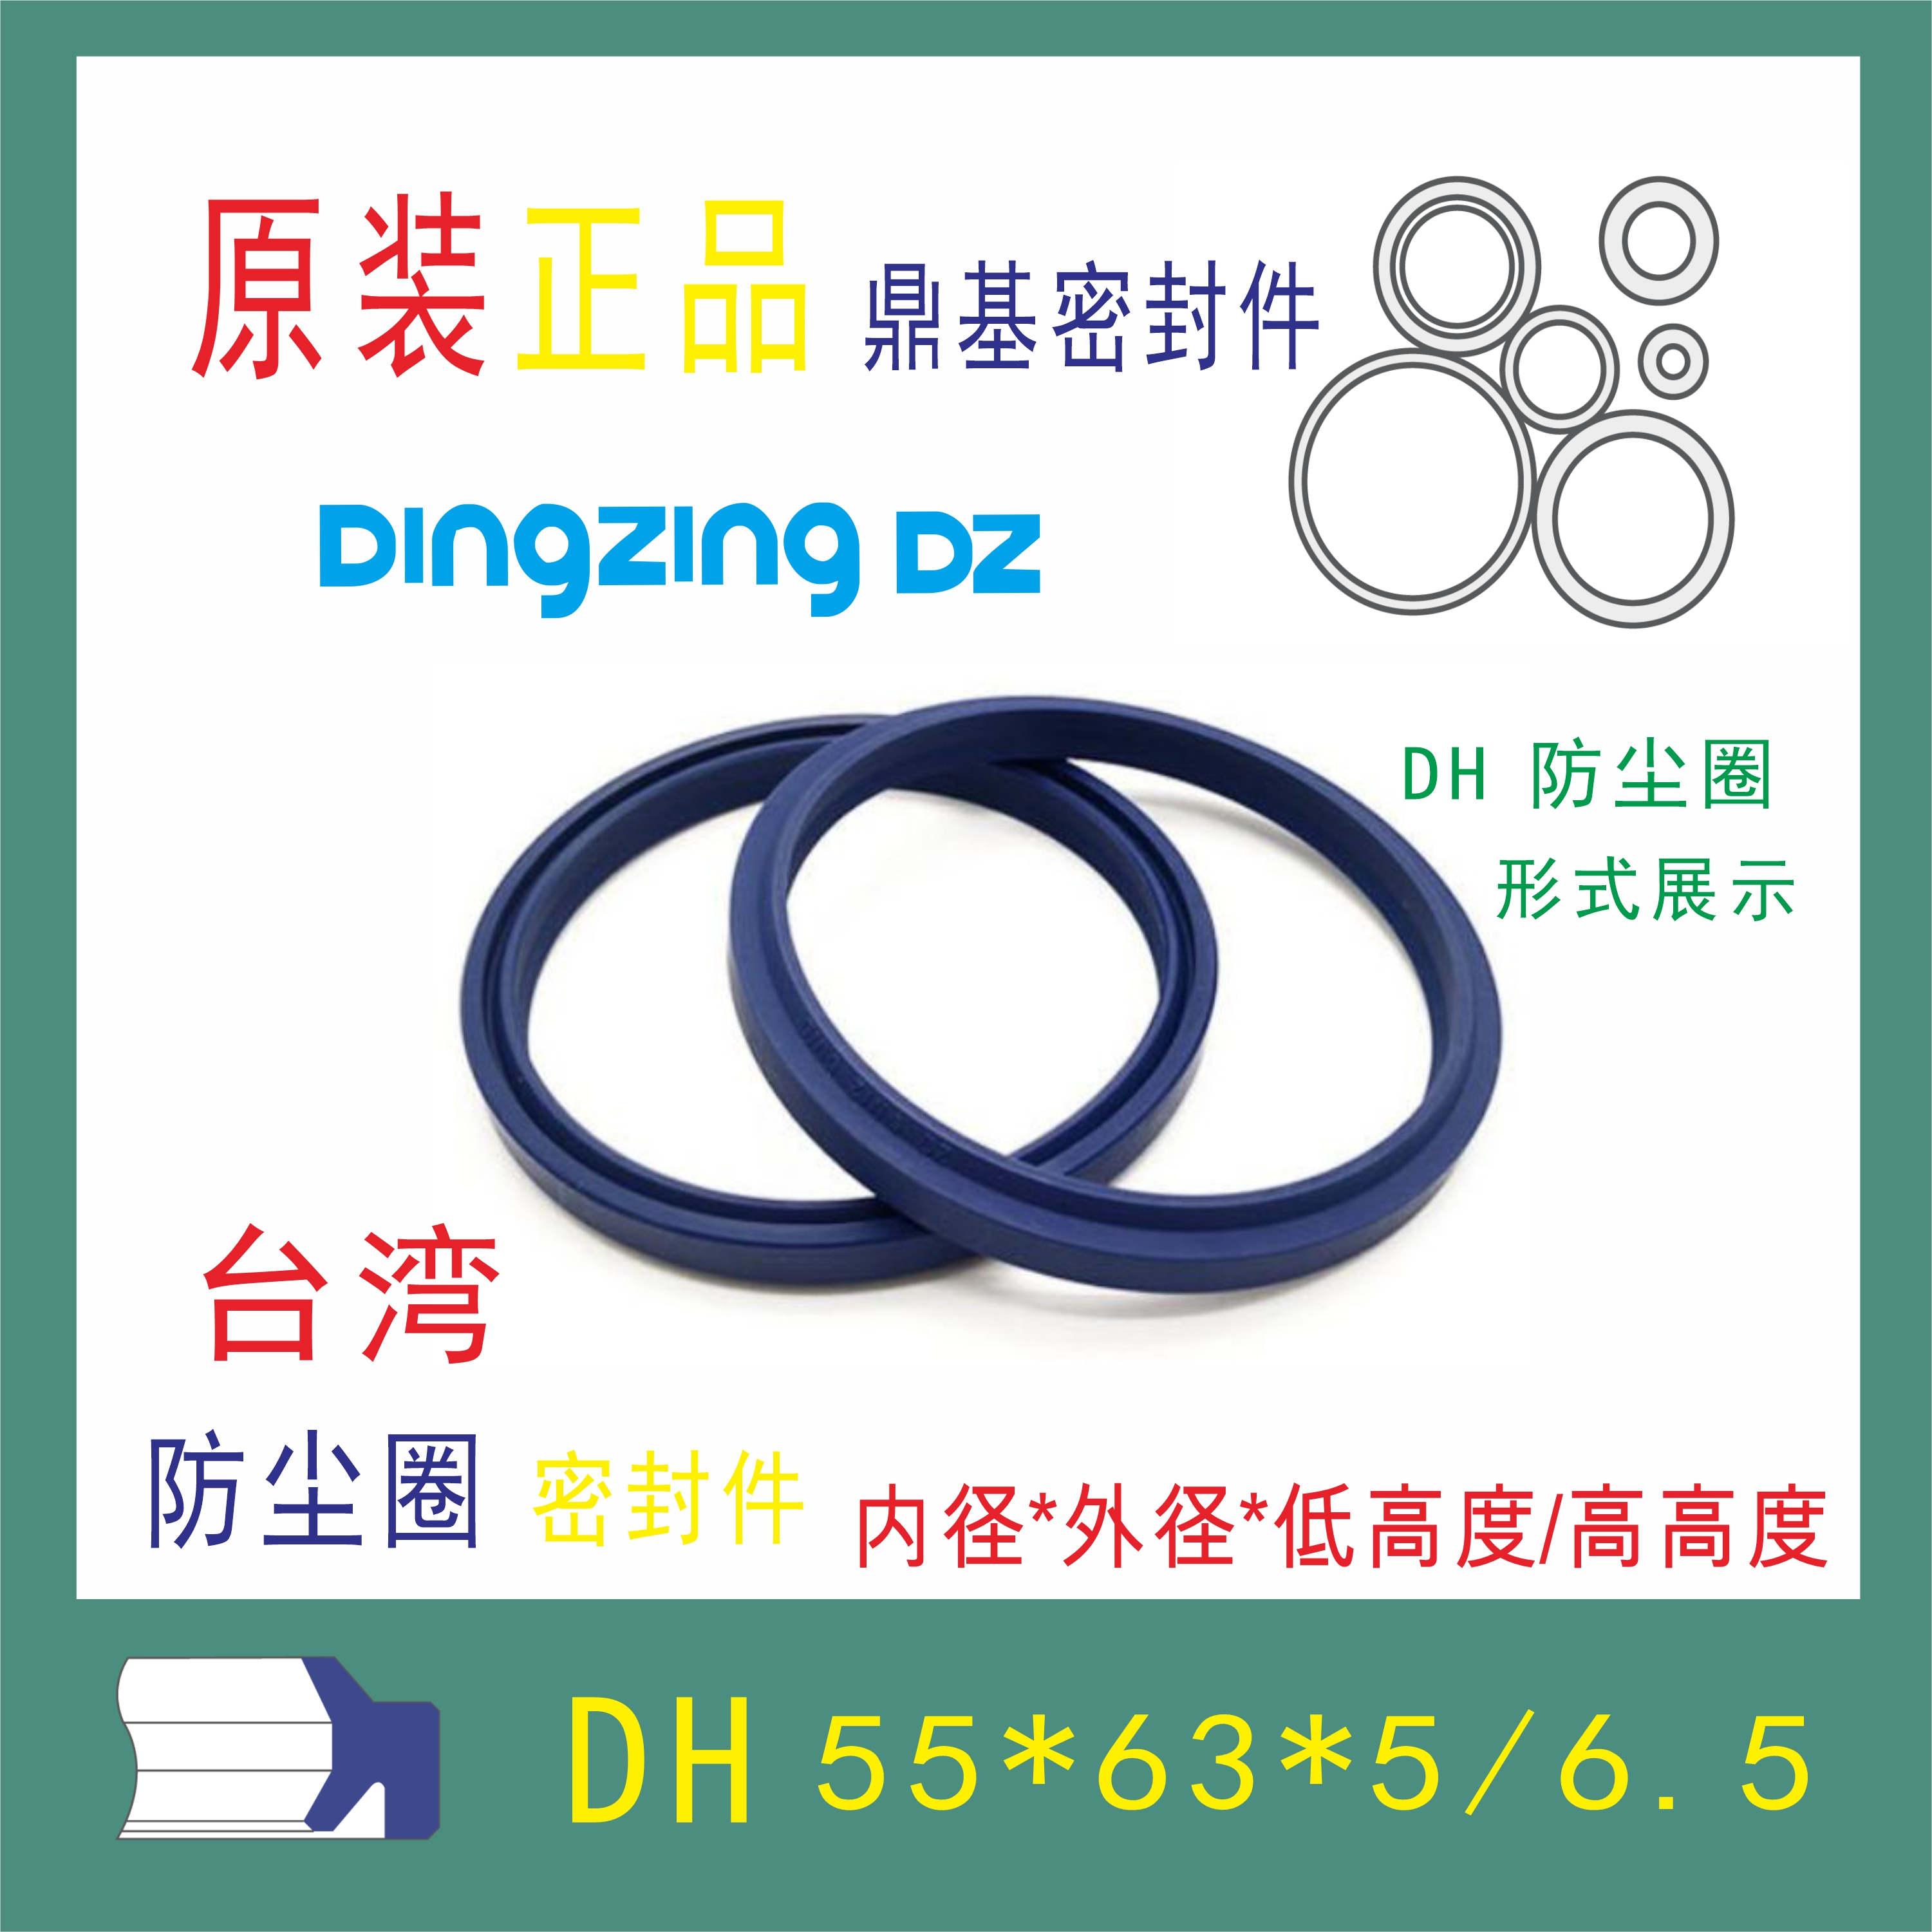 原装台湾鼎基密封件DH55X63X5/6.5液压缸聚氨酯防尘圈DINGZING DZ